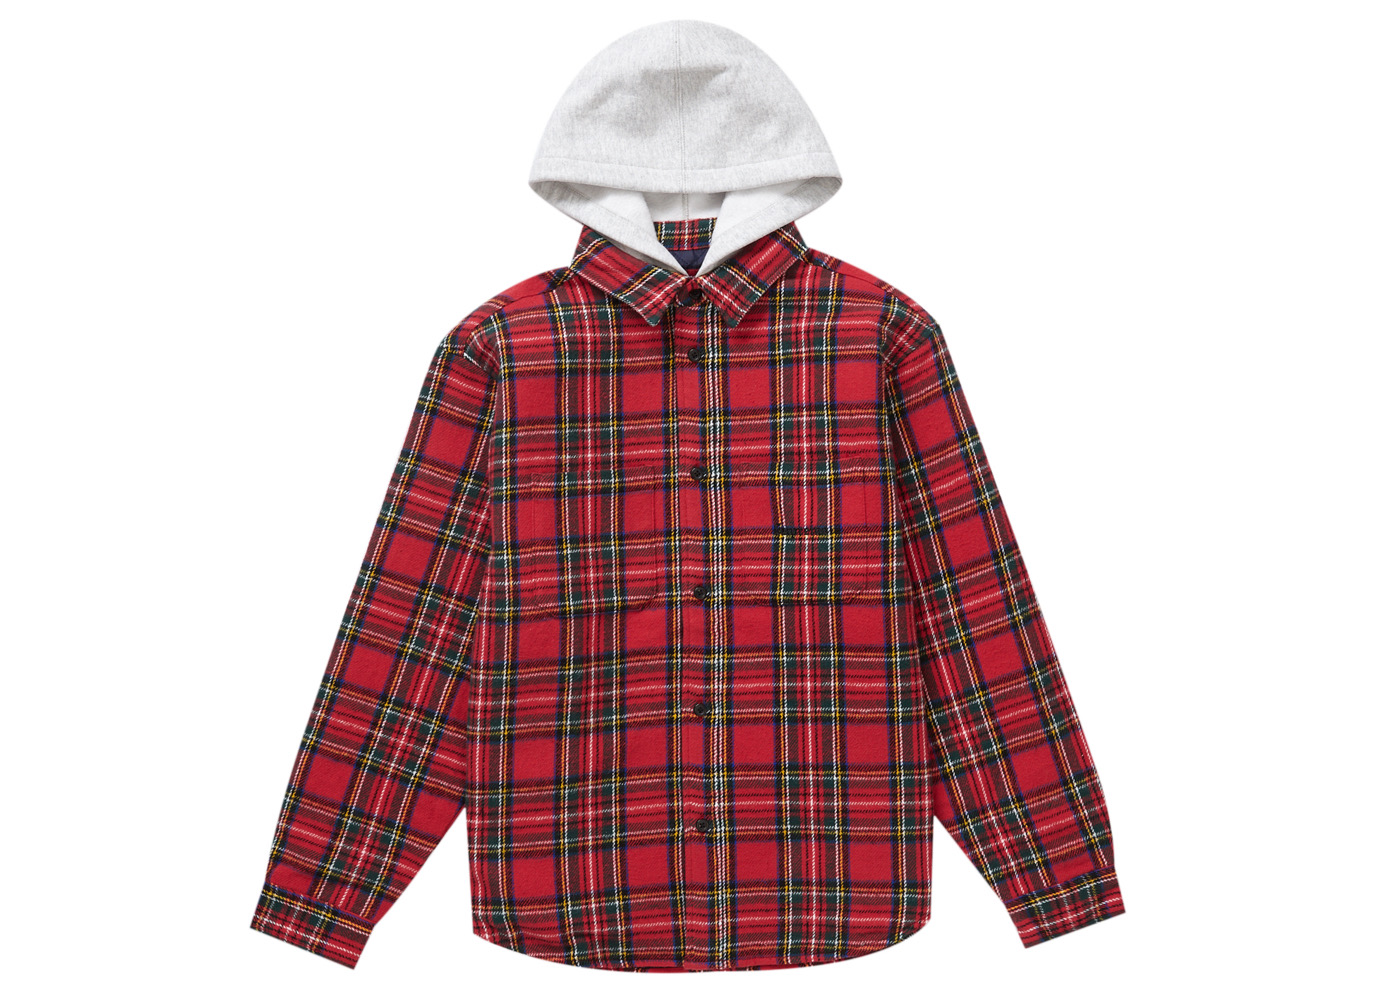 8,299円supreme Tartan Flannel Hooded Shirt